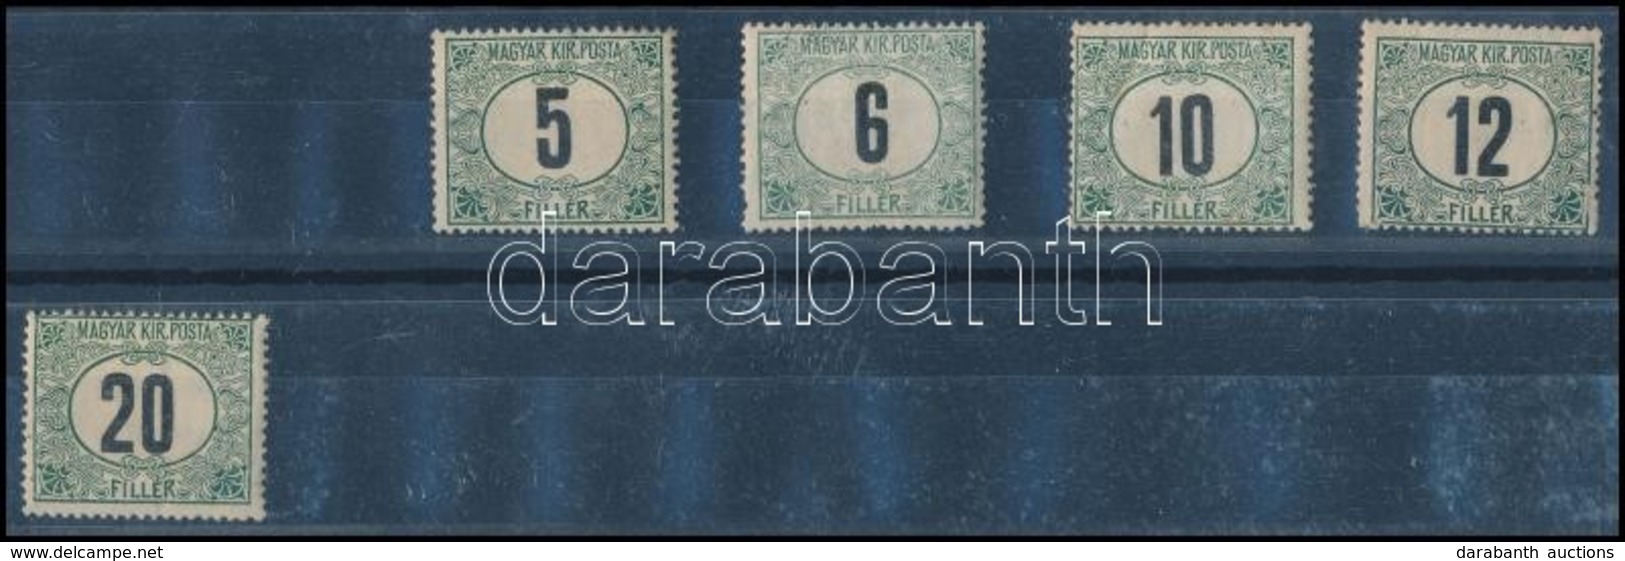 * 1908 Portó Sor 5 értéke, 3. Vízjelállás / 5 Values Of The Postage Due Set, Watermark Position 3 - Autres & Non Classés